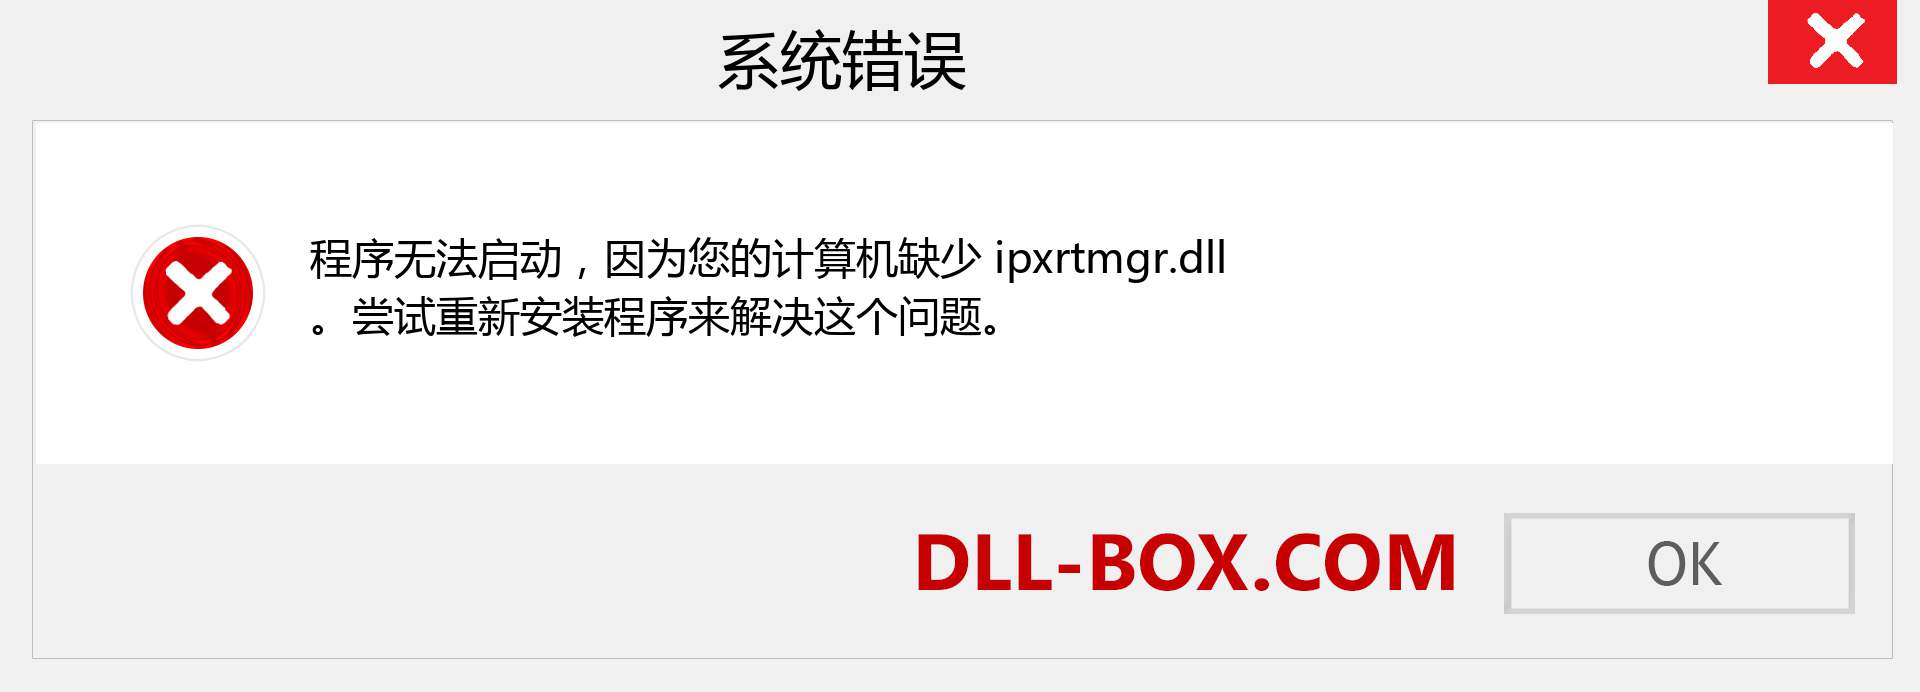 ipxrtmgr.dll 文件丢失？。 适用于 Windows 7、8、10 的下载 - 修复 Windows、照片、图像上的 ipxrtmgr dll 丢失错误